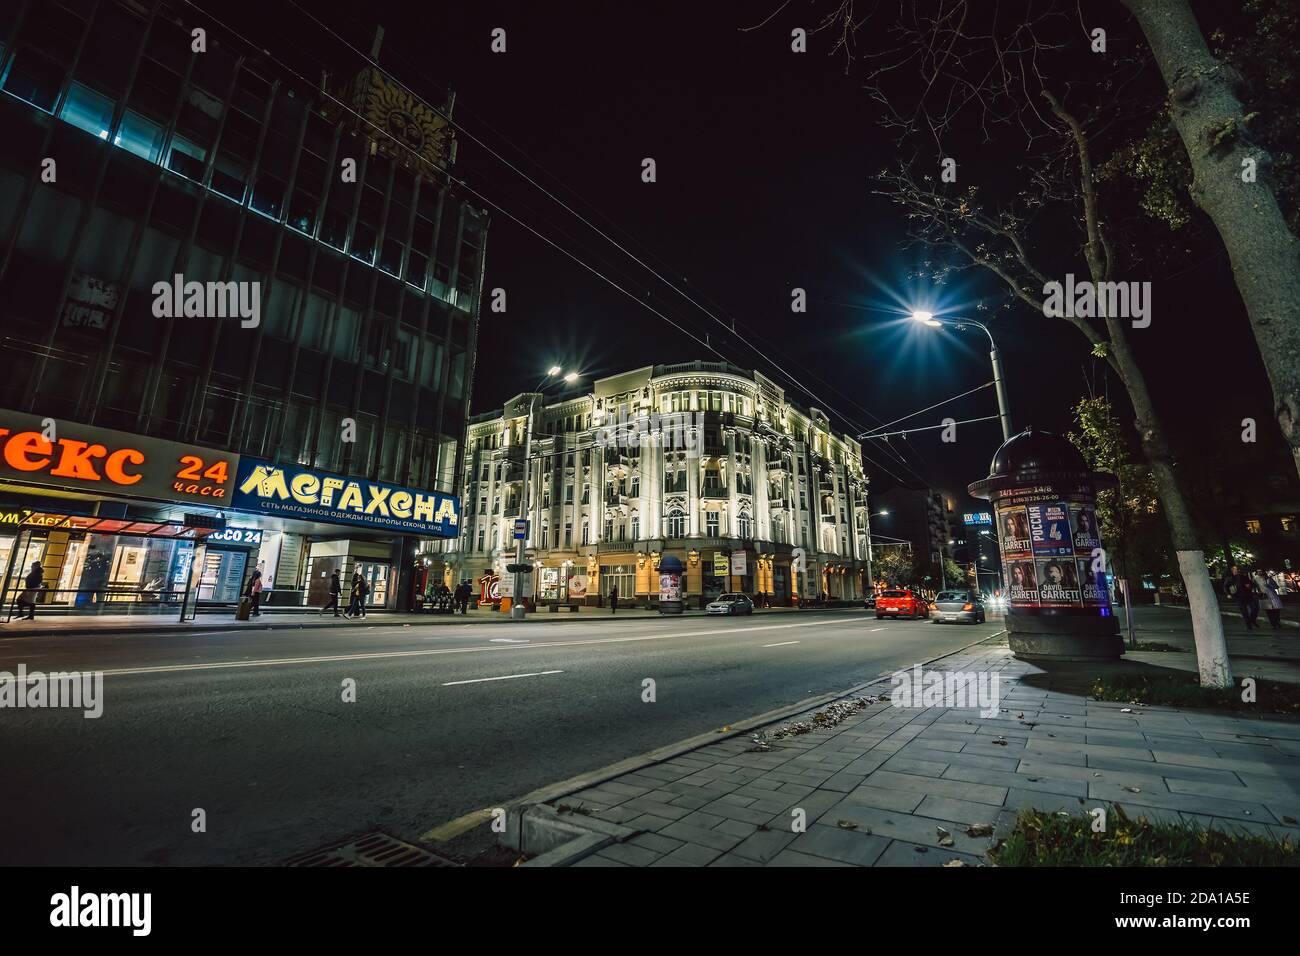 Rostov en Don, Rusia - Noviembre 2020 : calle Sadovaya en el centro histórico de la ciudad de Rostov por la noche con la famosa arquitectura de edificios hermosos iluminados. Foto de stock